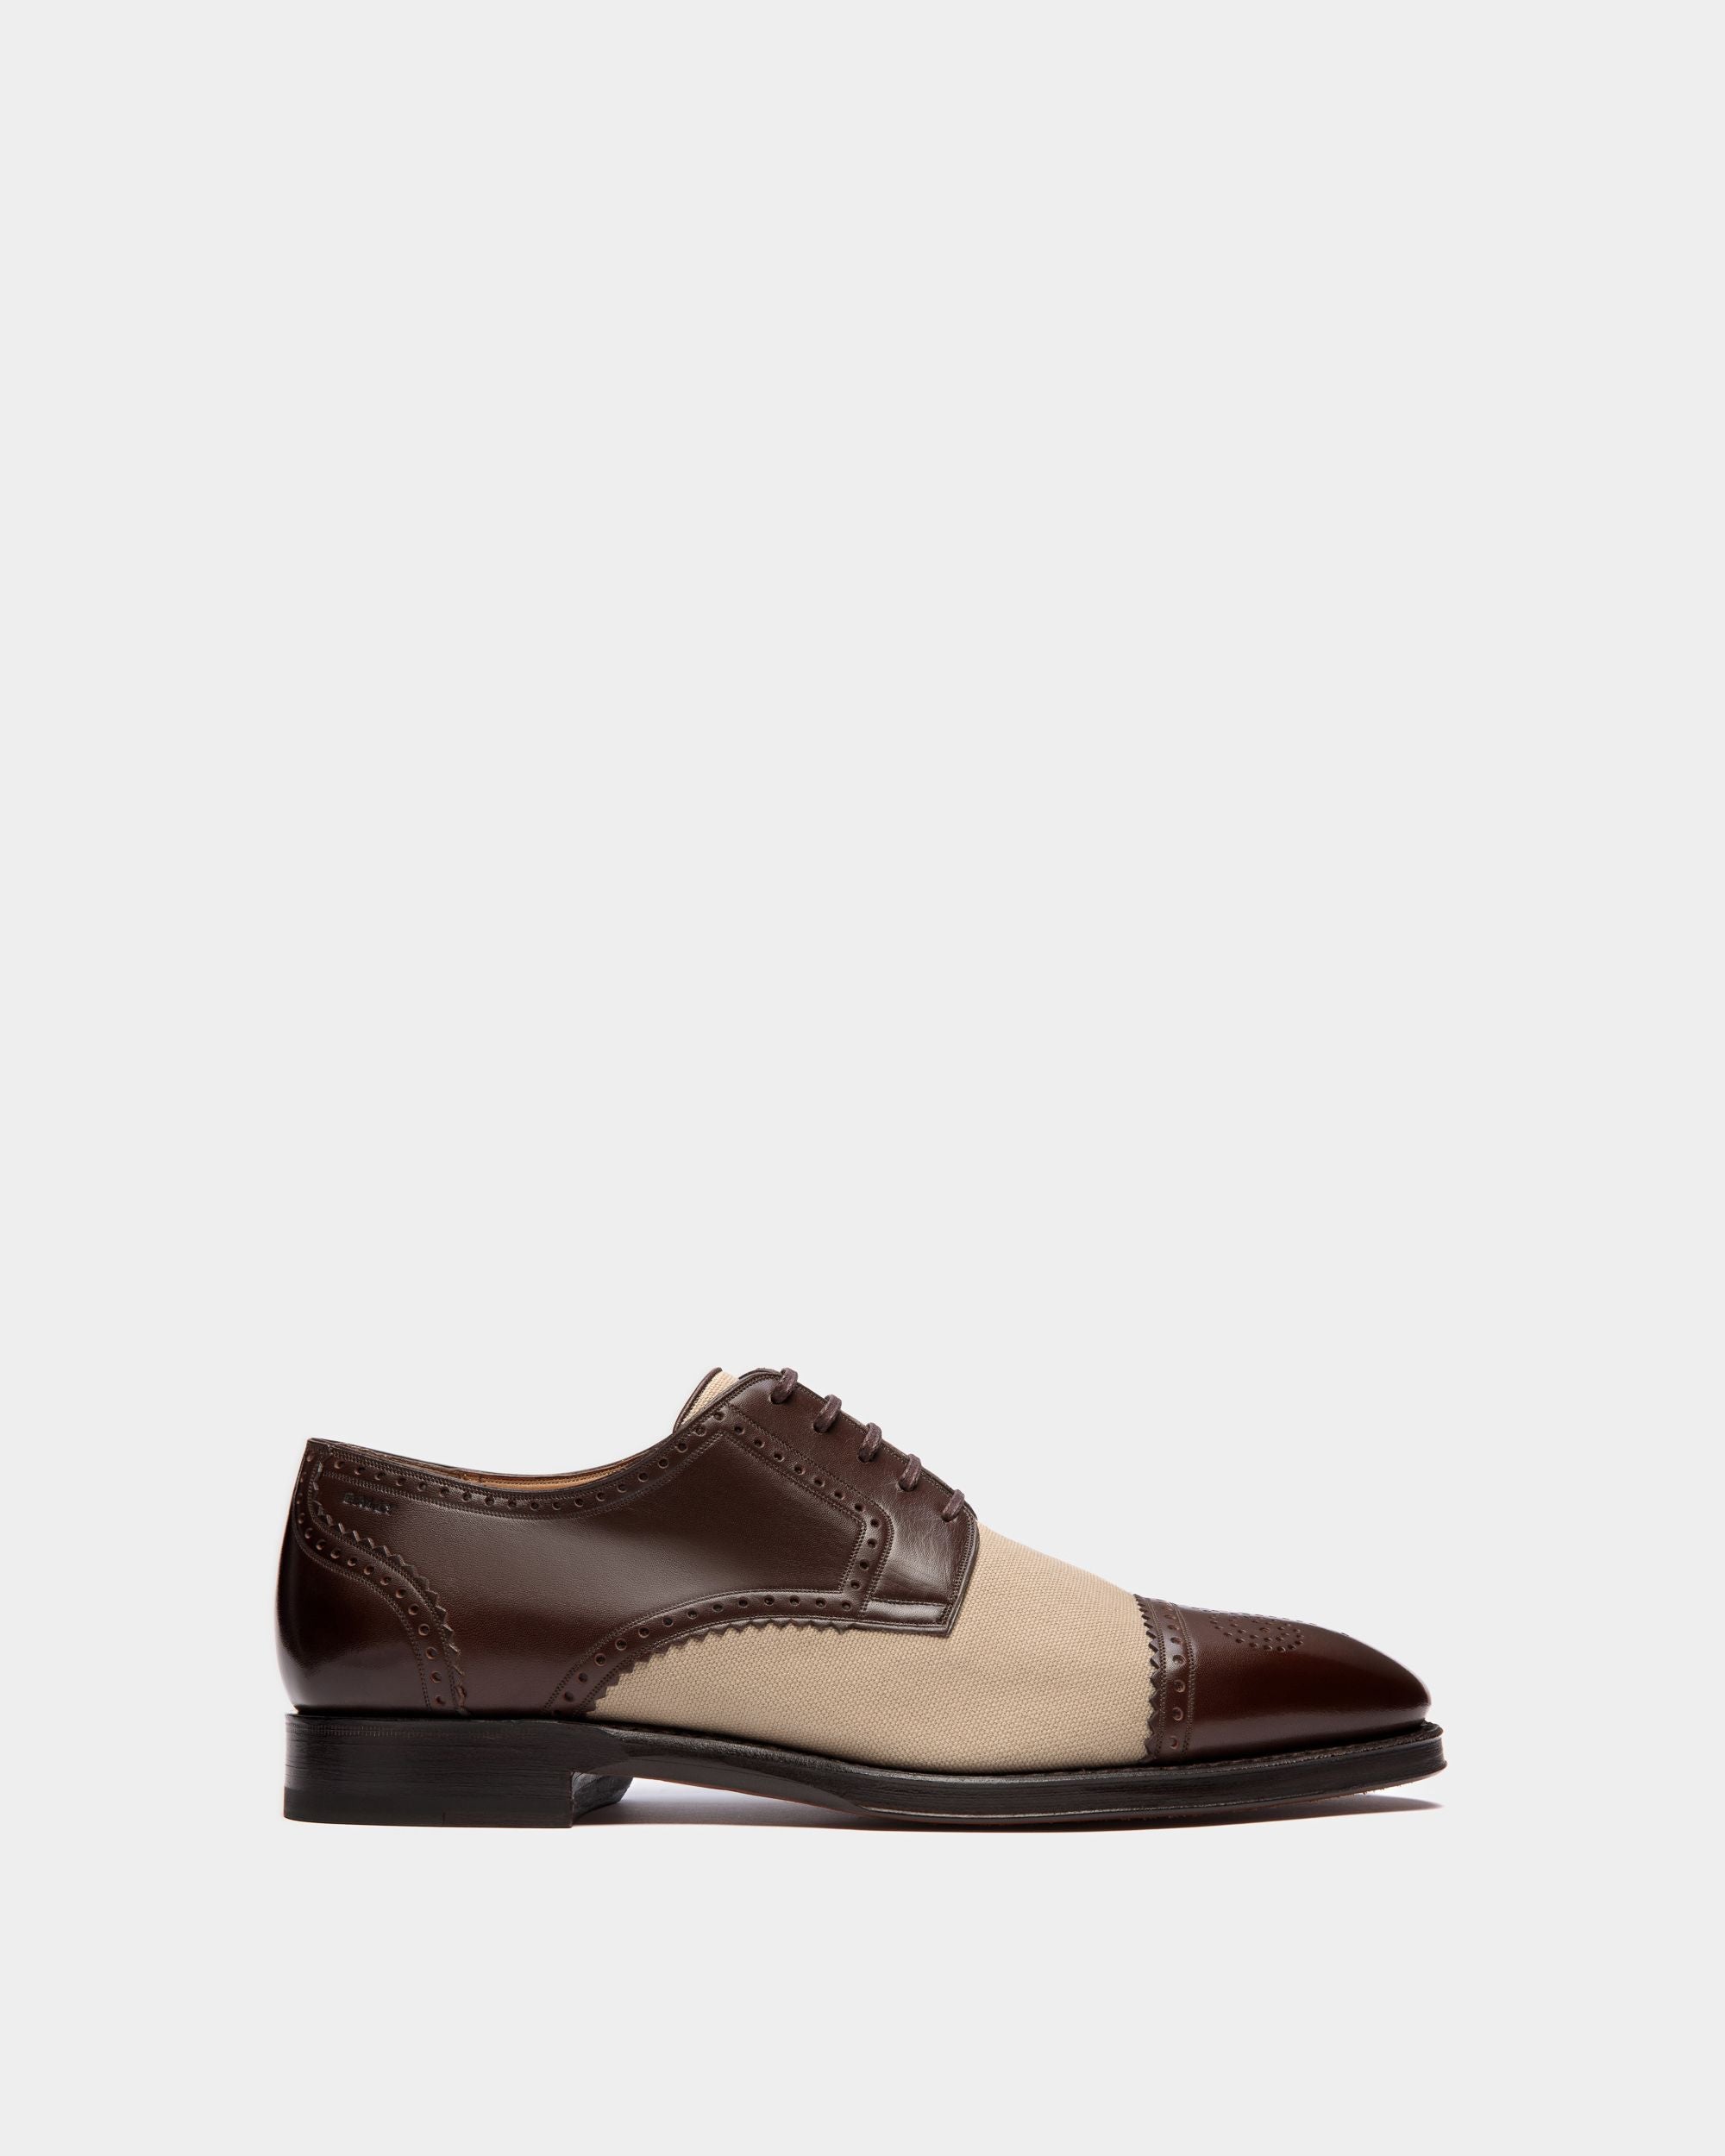 Scribe | Zweifarbige Derby-Schuhe für Herren aus Leder und Stoff | Bally | Still Life Seite